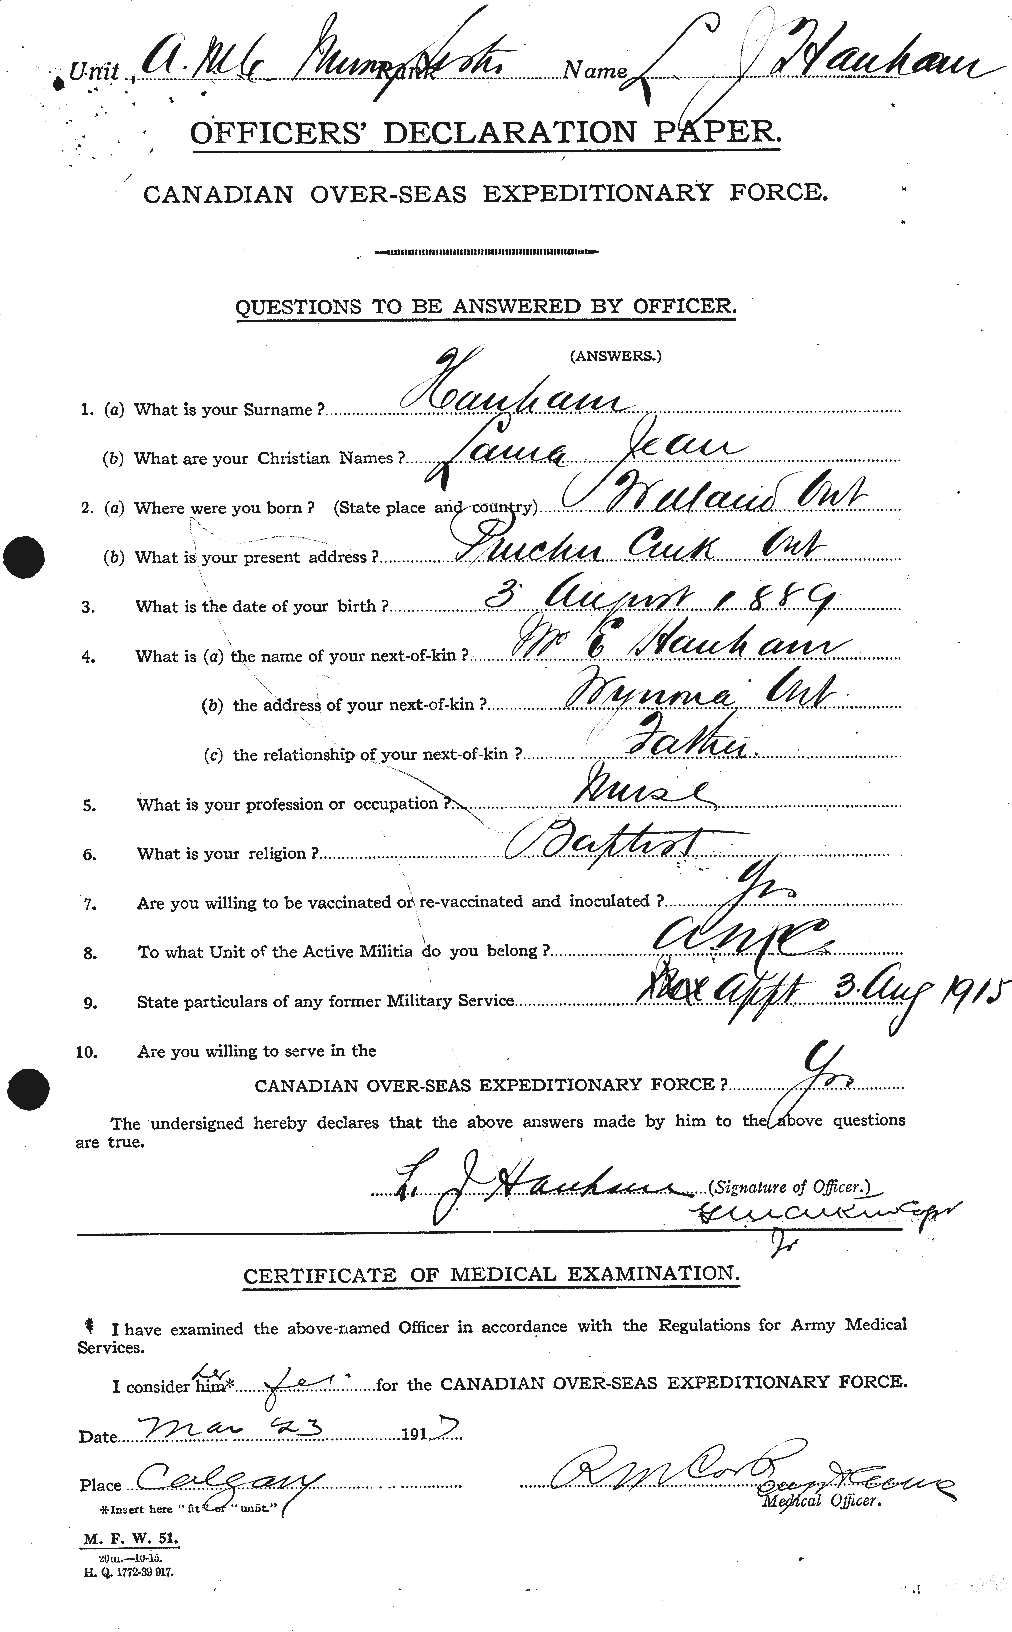 Dossiers du Personnel de la Première Guerre mondiale - CEC 375841a